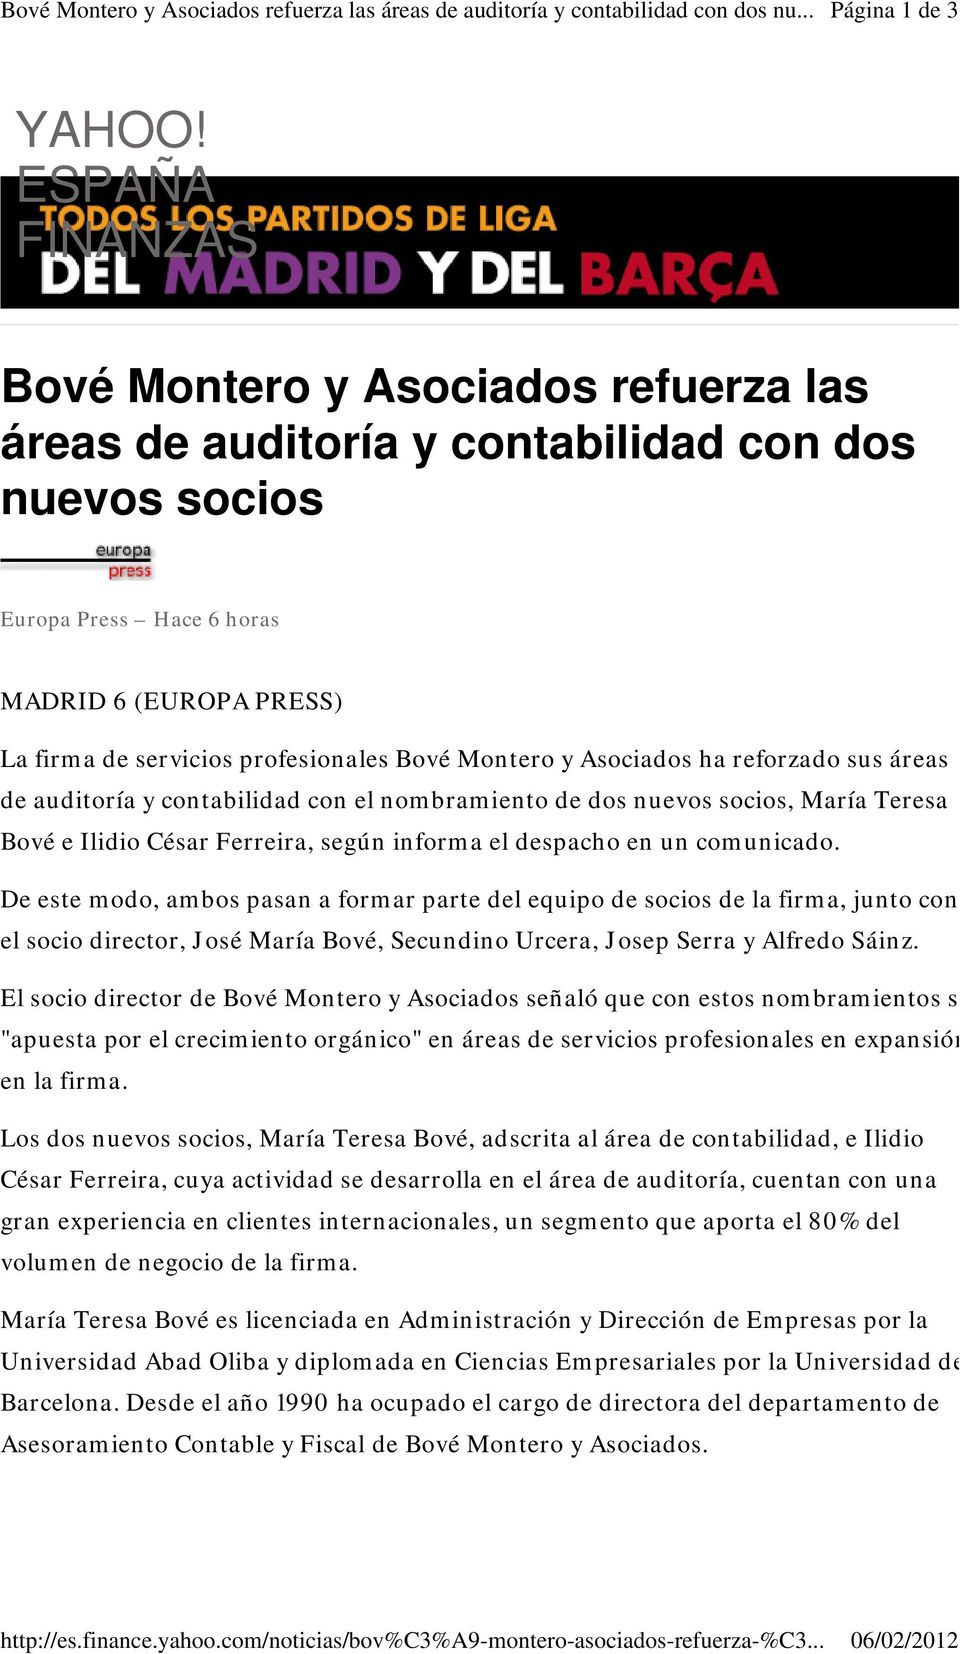 Bové Montero y Asociados ha reforzado sus áreas de auditoría y contabilidad con el nombramiento de dos nuevos socios, María Teresa Bové e Ilidio César Ferreira, según informa el despacho en un